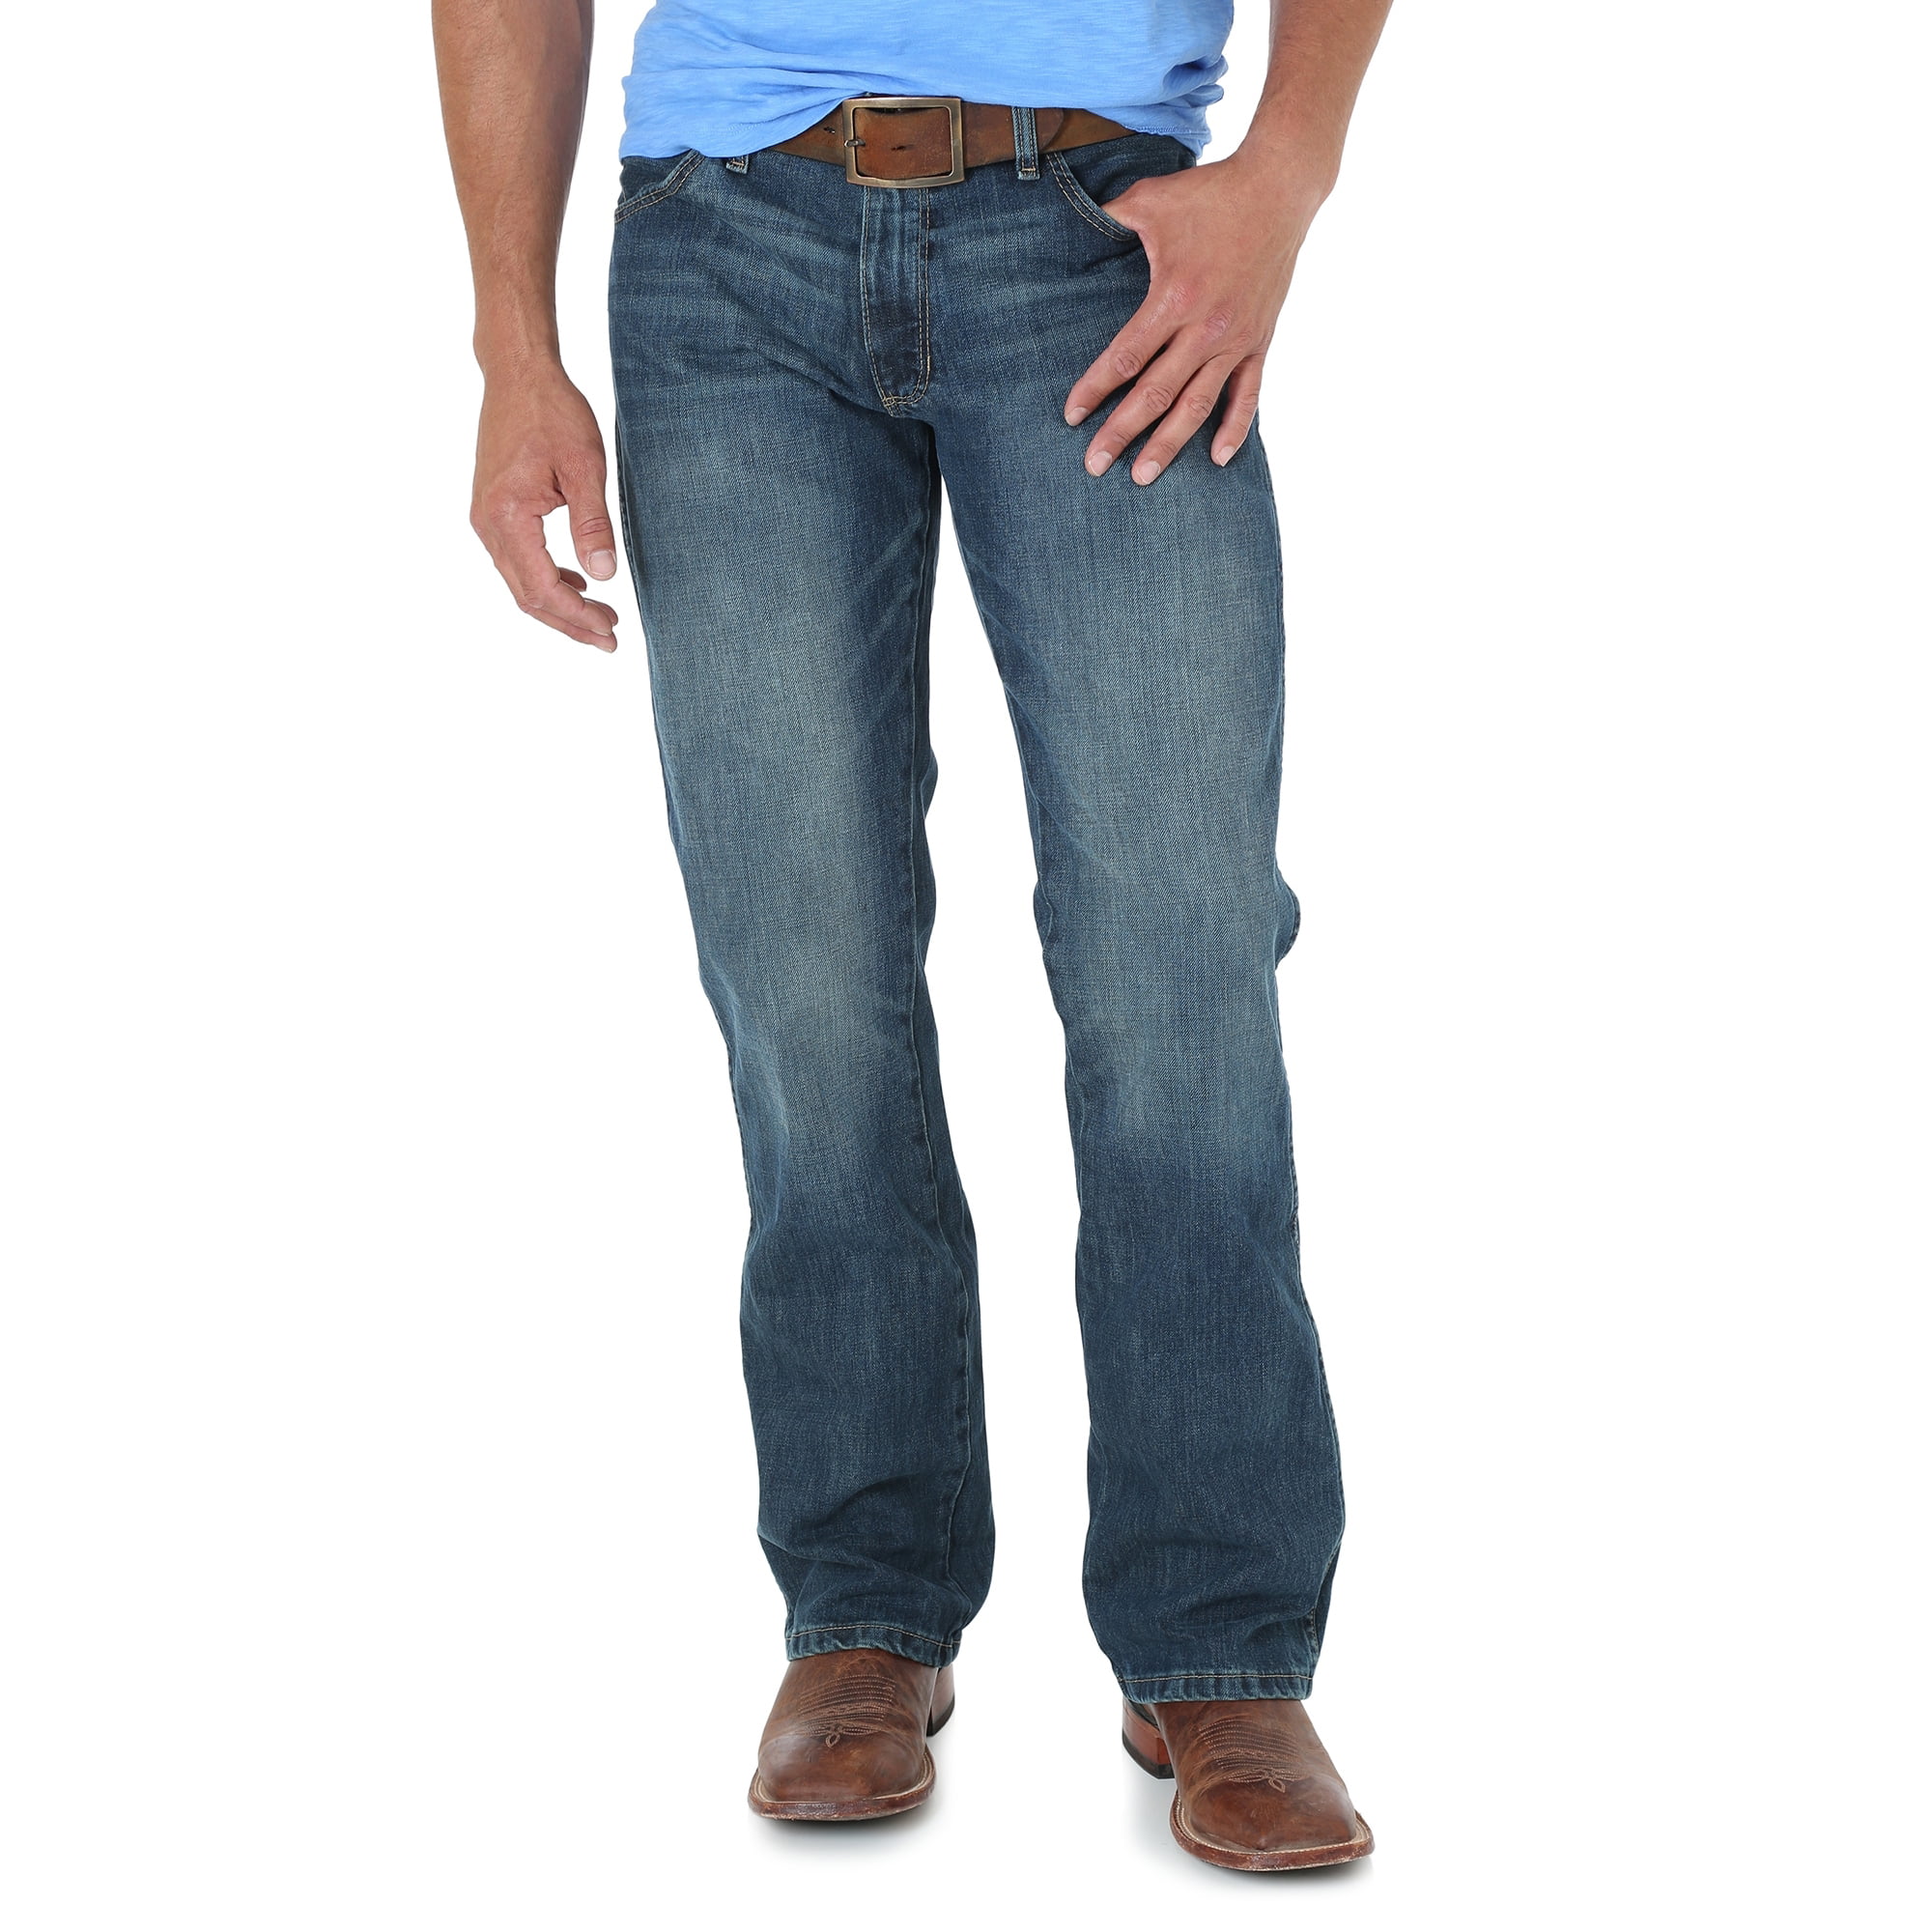 jason aldean wrangler jeans